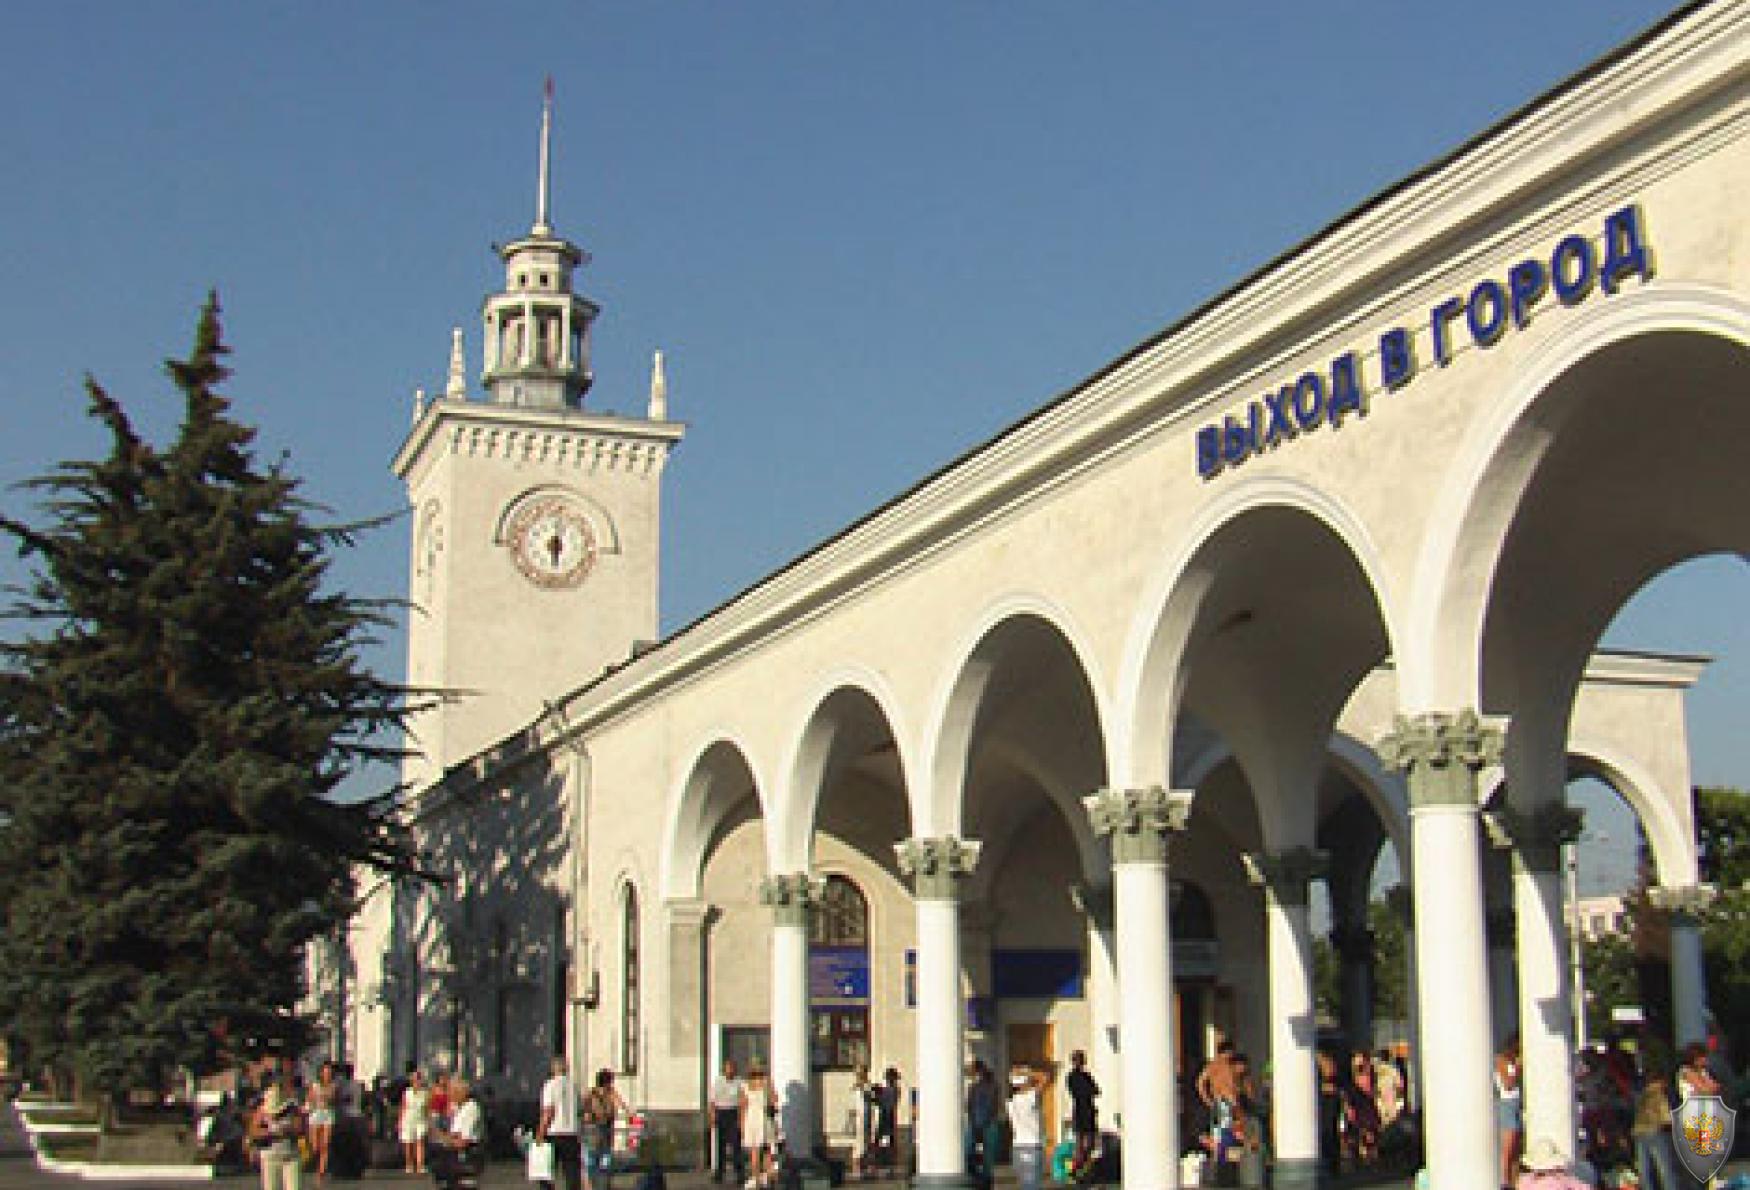 Железнодорожный вокзал Симферополь